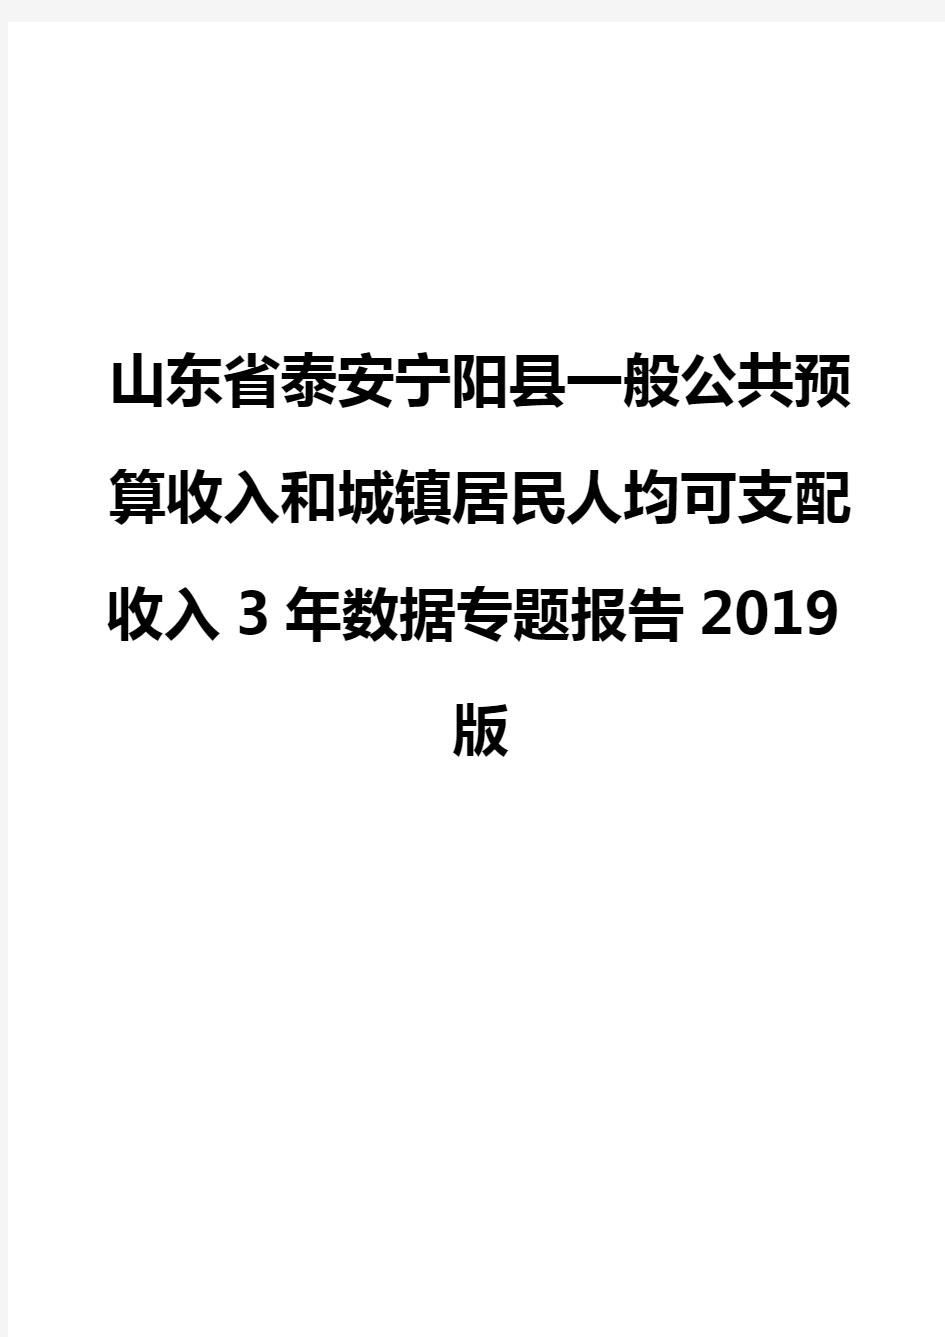 山东省泰安宁阳县一般公共预算收入和城镇居民人均可支配收入3年数据专题报告2019版